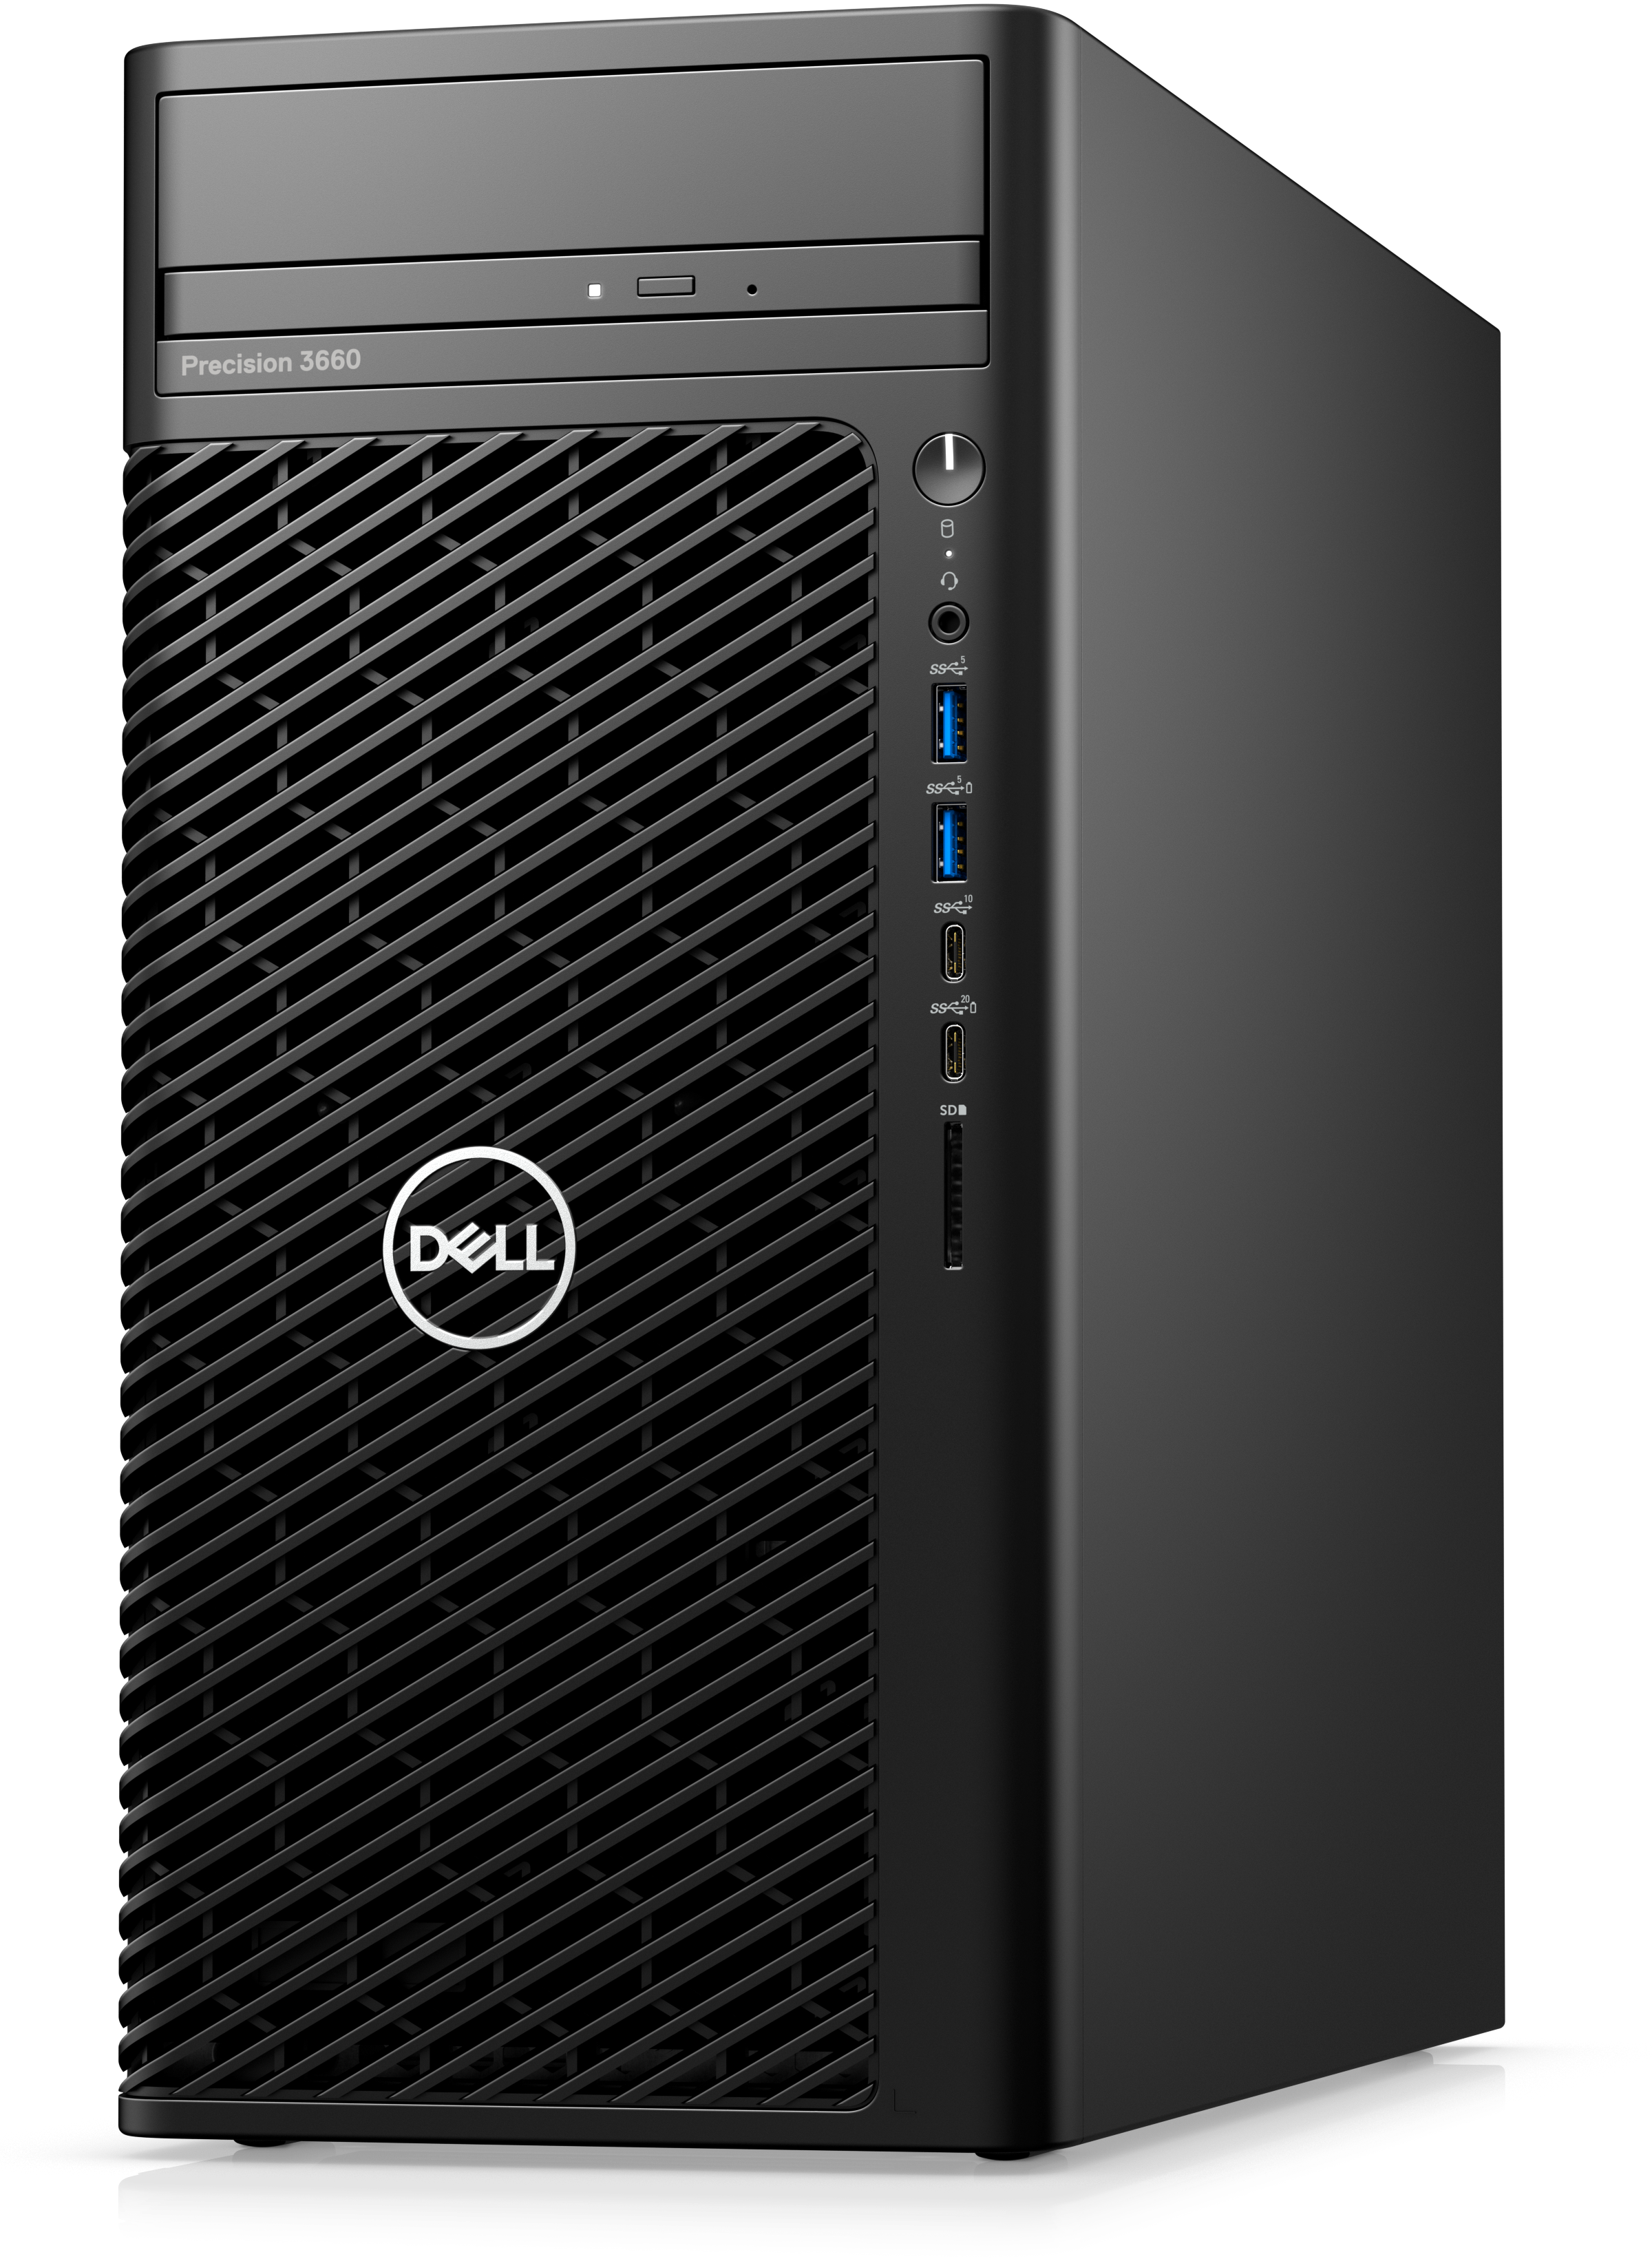 Dell Precision 3660, Intel Core i7-12700 (12 core 25MB cache), 8GB, 1TB, No Monitor, DVDRW, 3yrs NBD, 500W, Windows 10 Pro